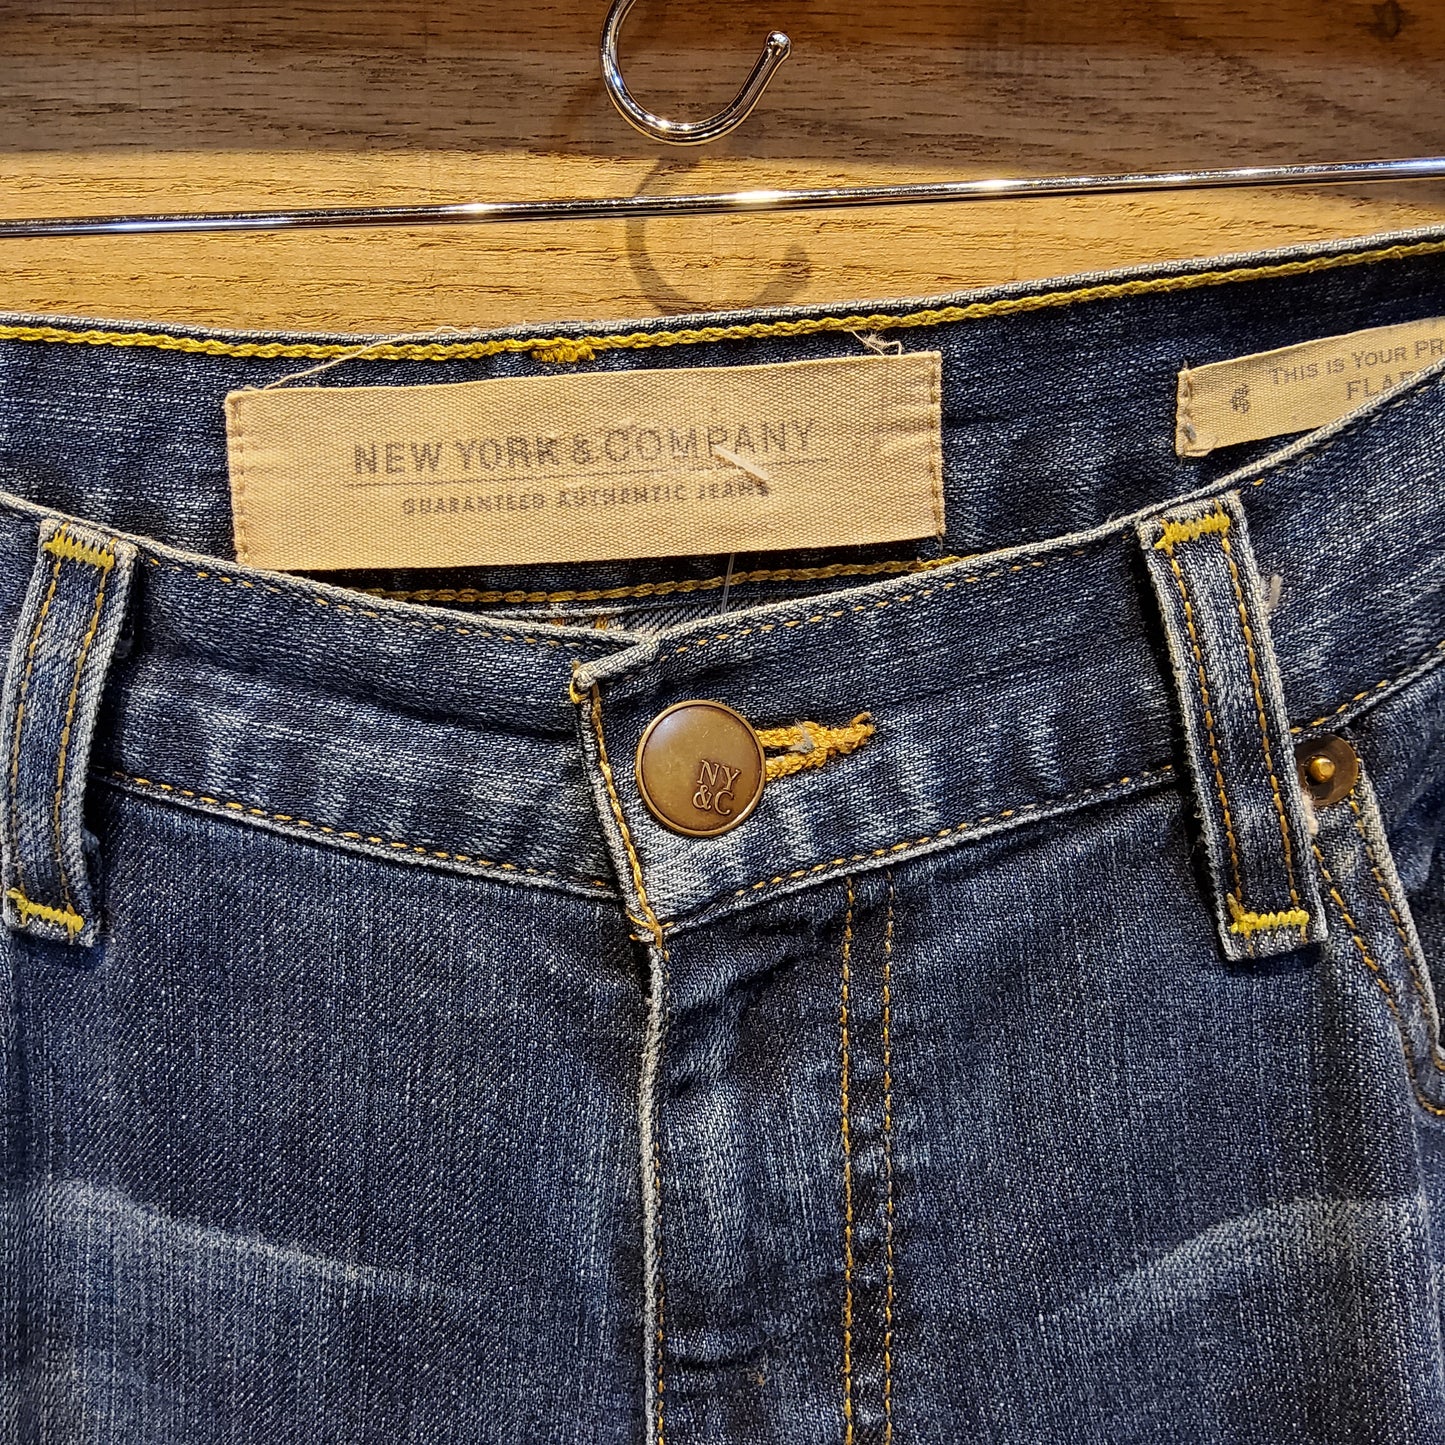 NY & Co. Flare Jeans Size 12